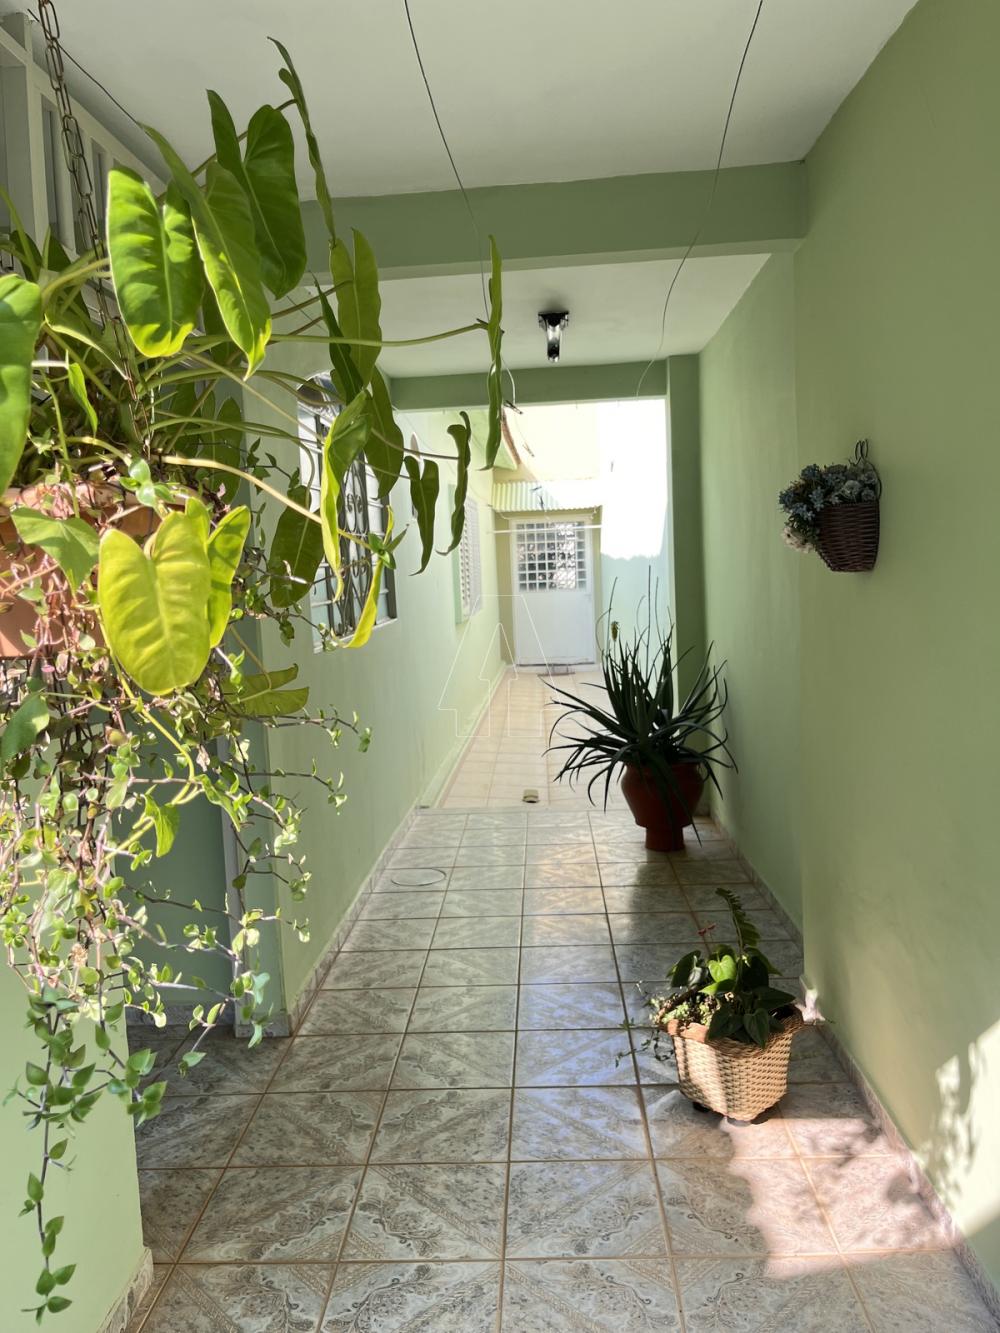 Comprar Casa / Residencial em Araçatuba R$ 370.000,00 - Foto 16